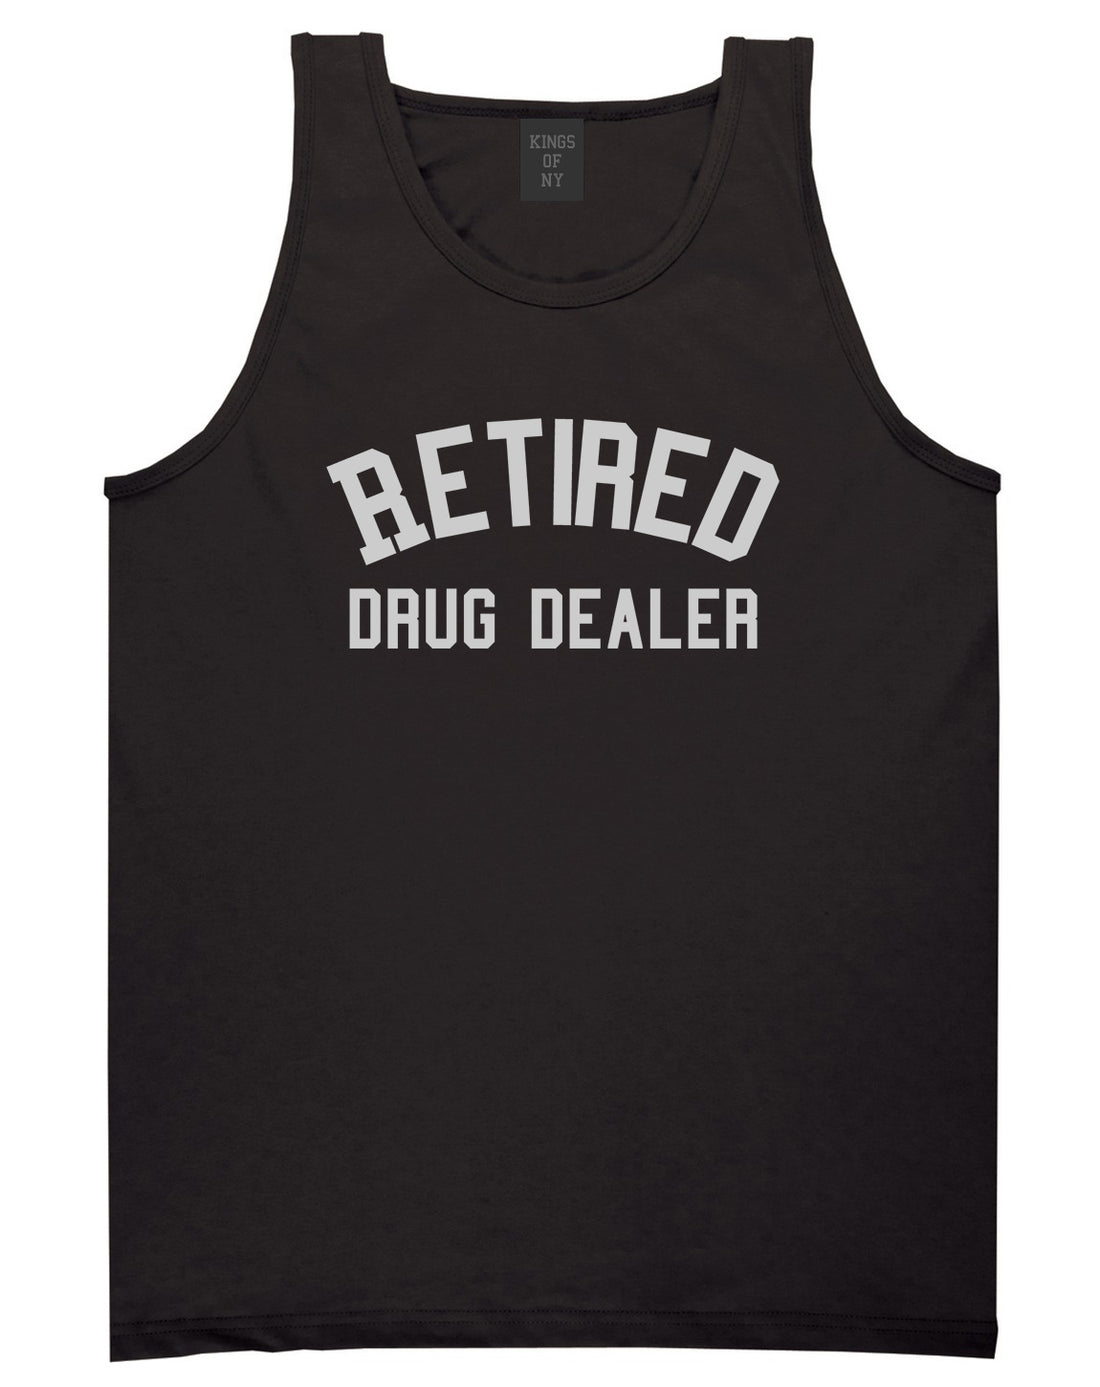 Retired_Drug_Dealer Mens Black Tank Top Shirt by Kings Of NY